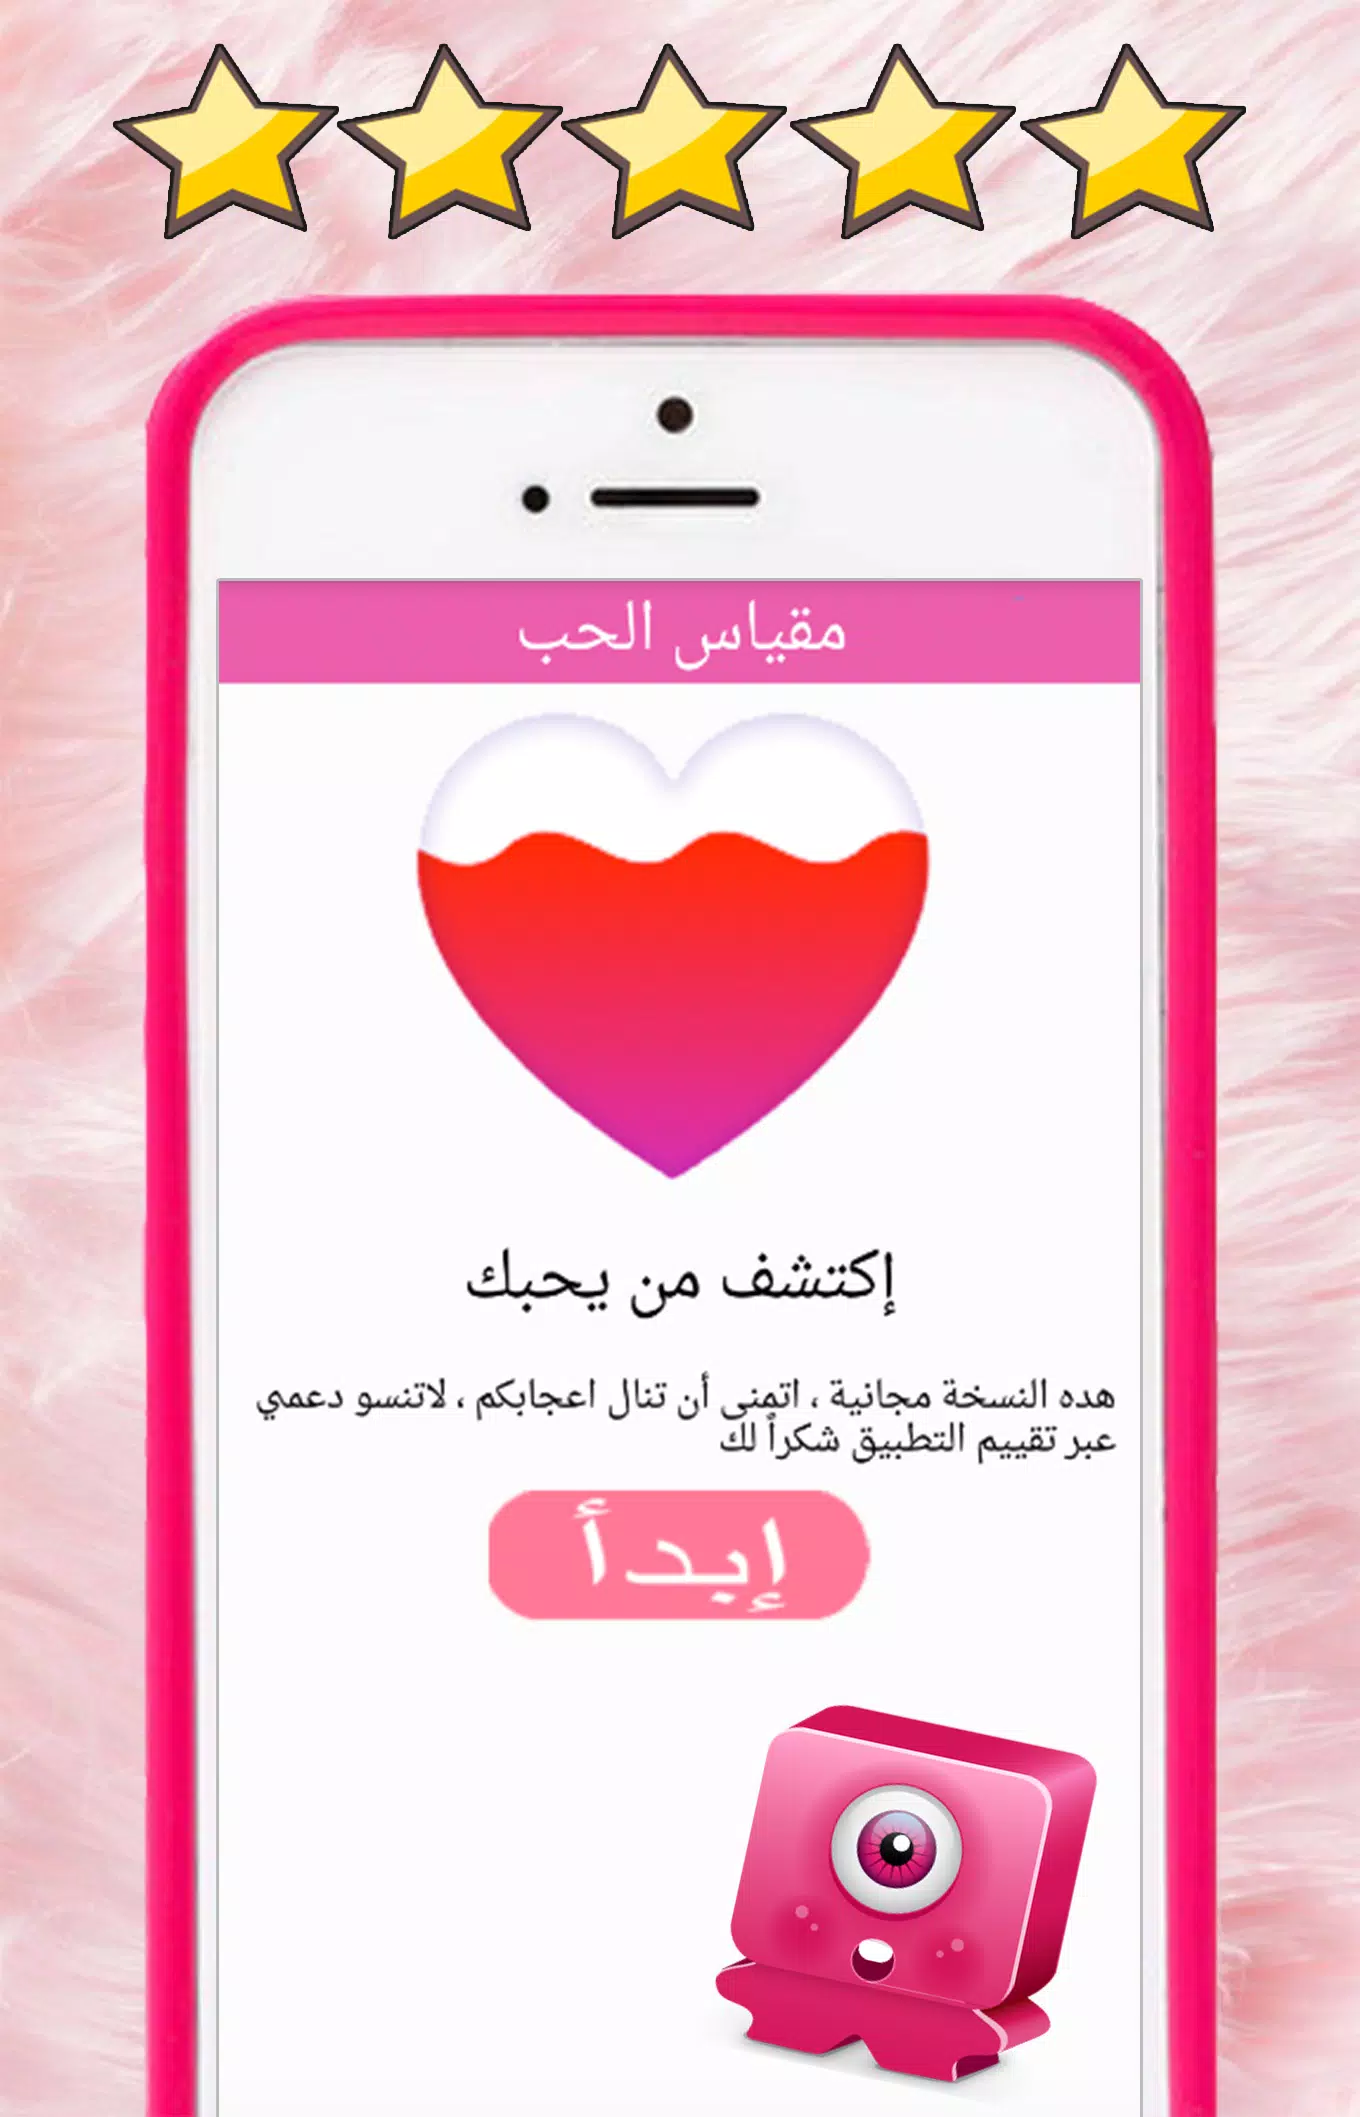 العاب حب: مقياس الحب الحقيقي بالاسئلة لعبة الحب APK for Android Download